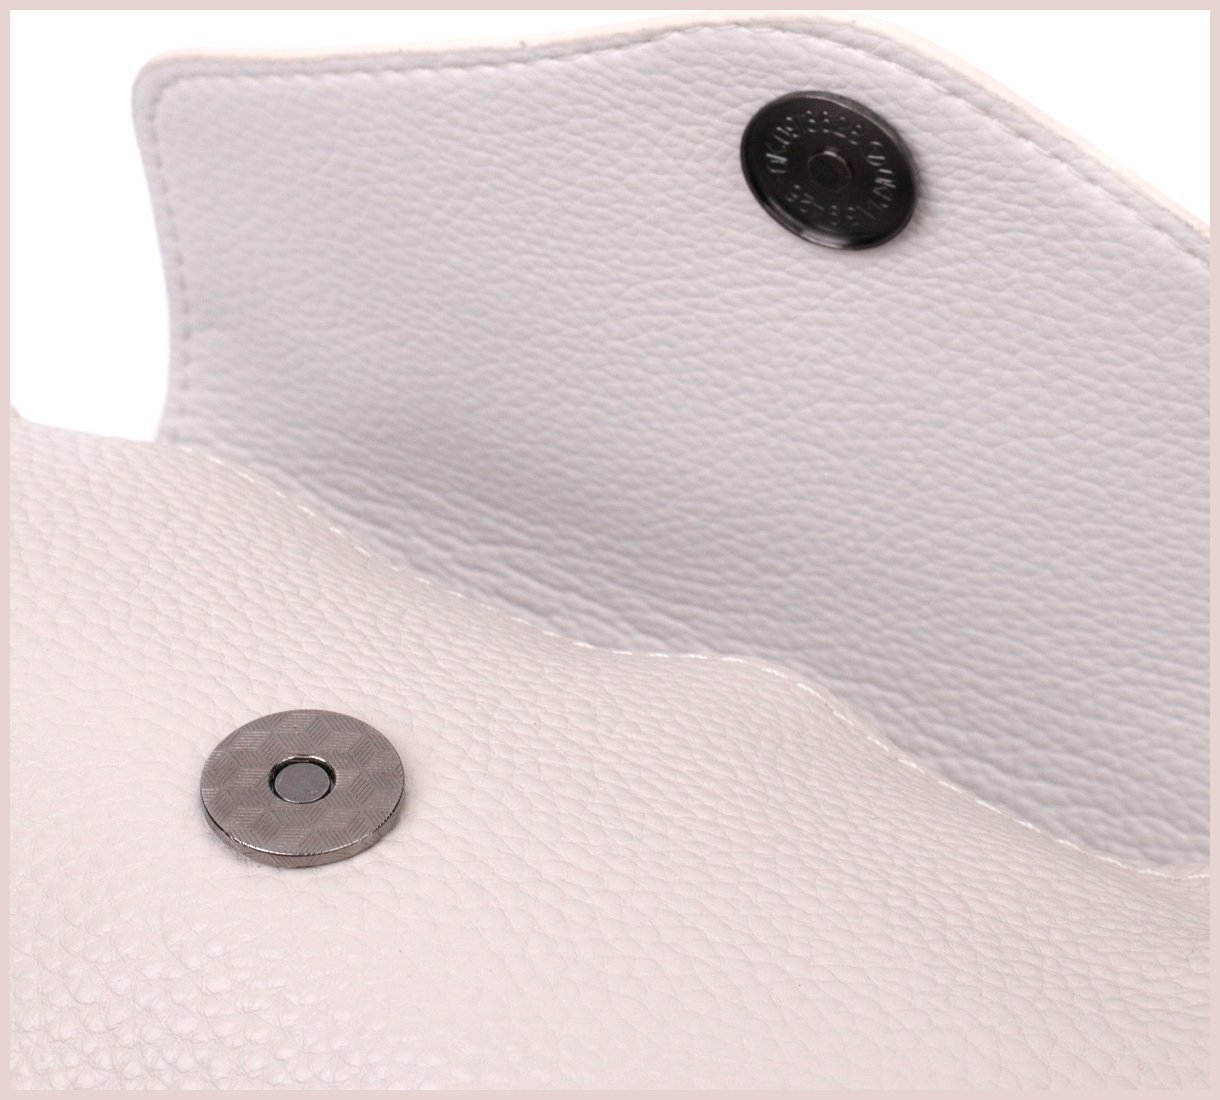 Кожаная женская сумка-кроссбоди белого цвета с клапаном Vintage 2422255